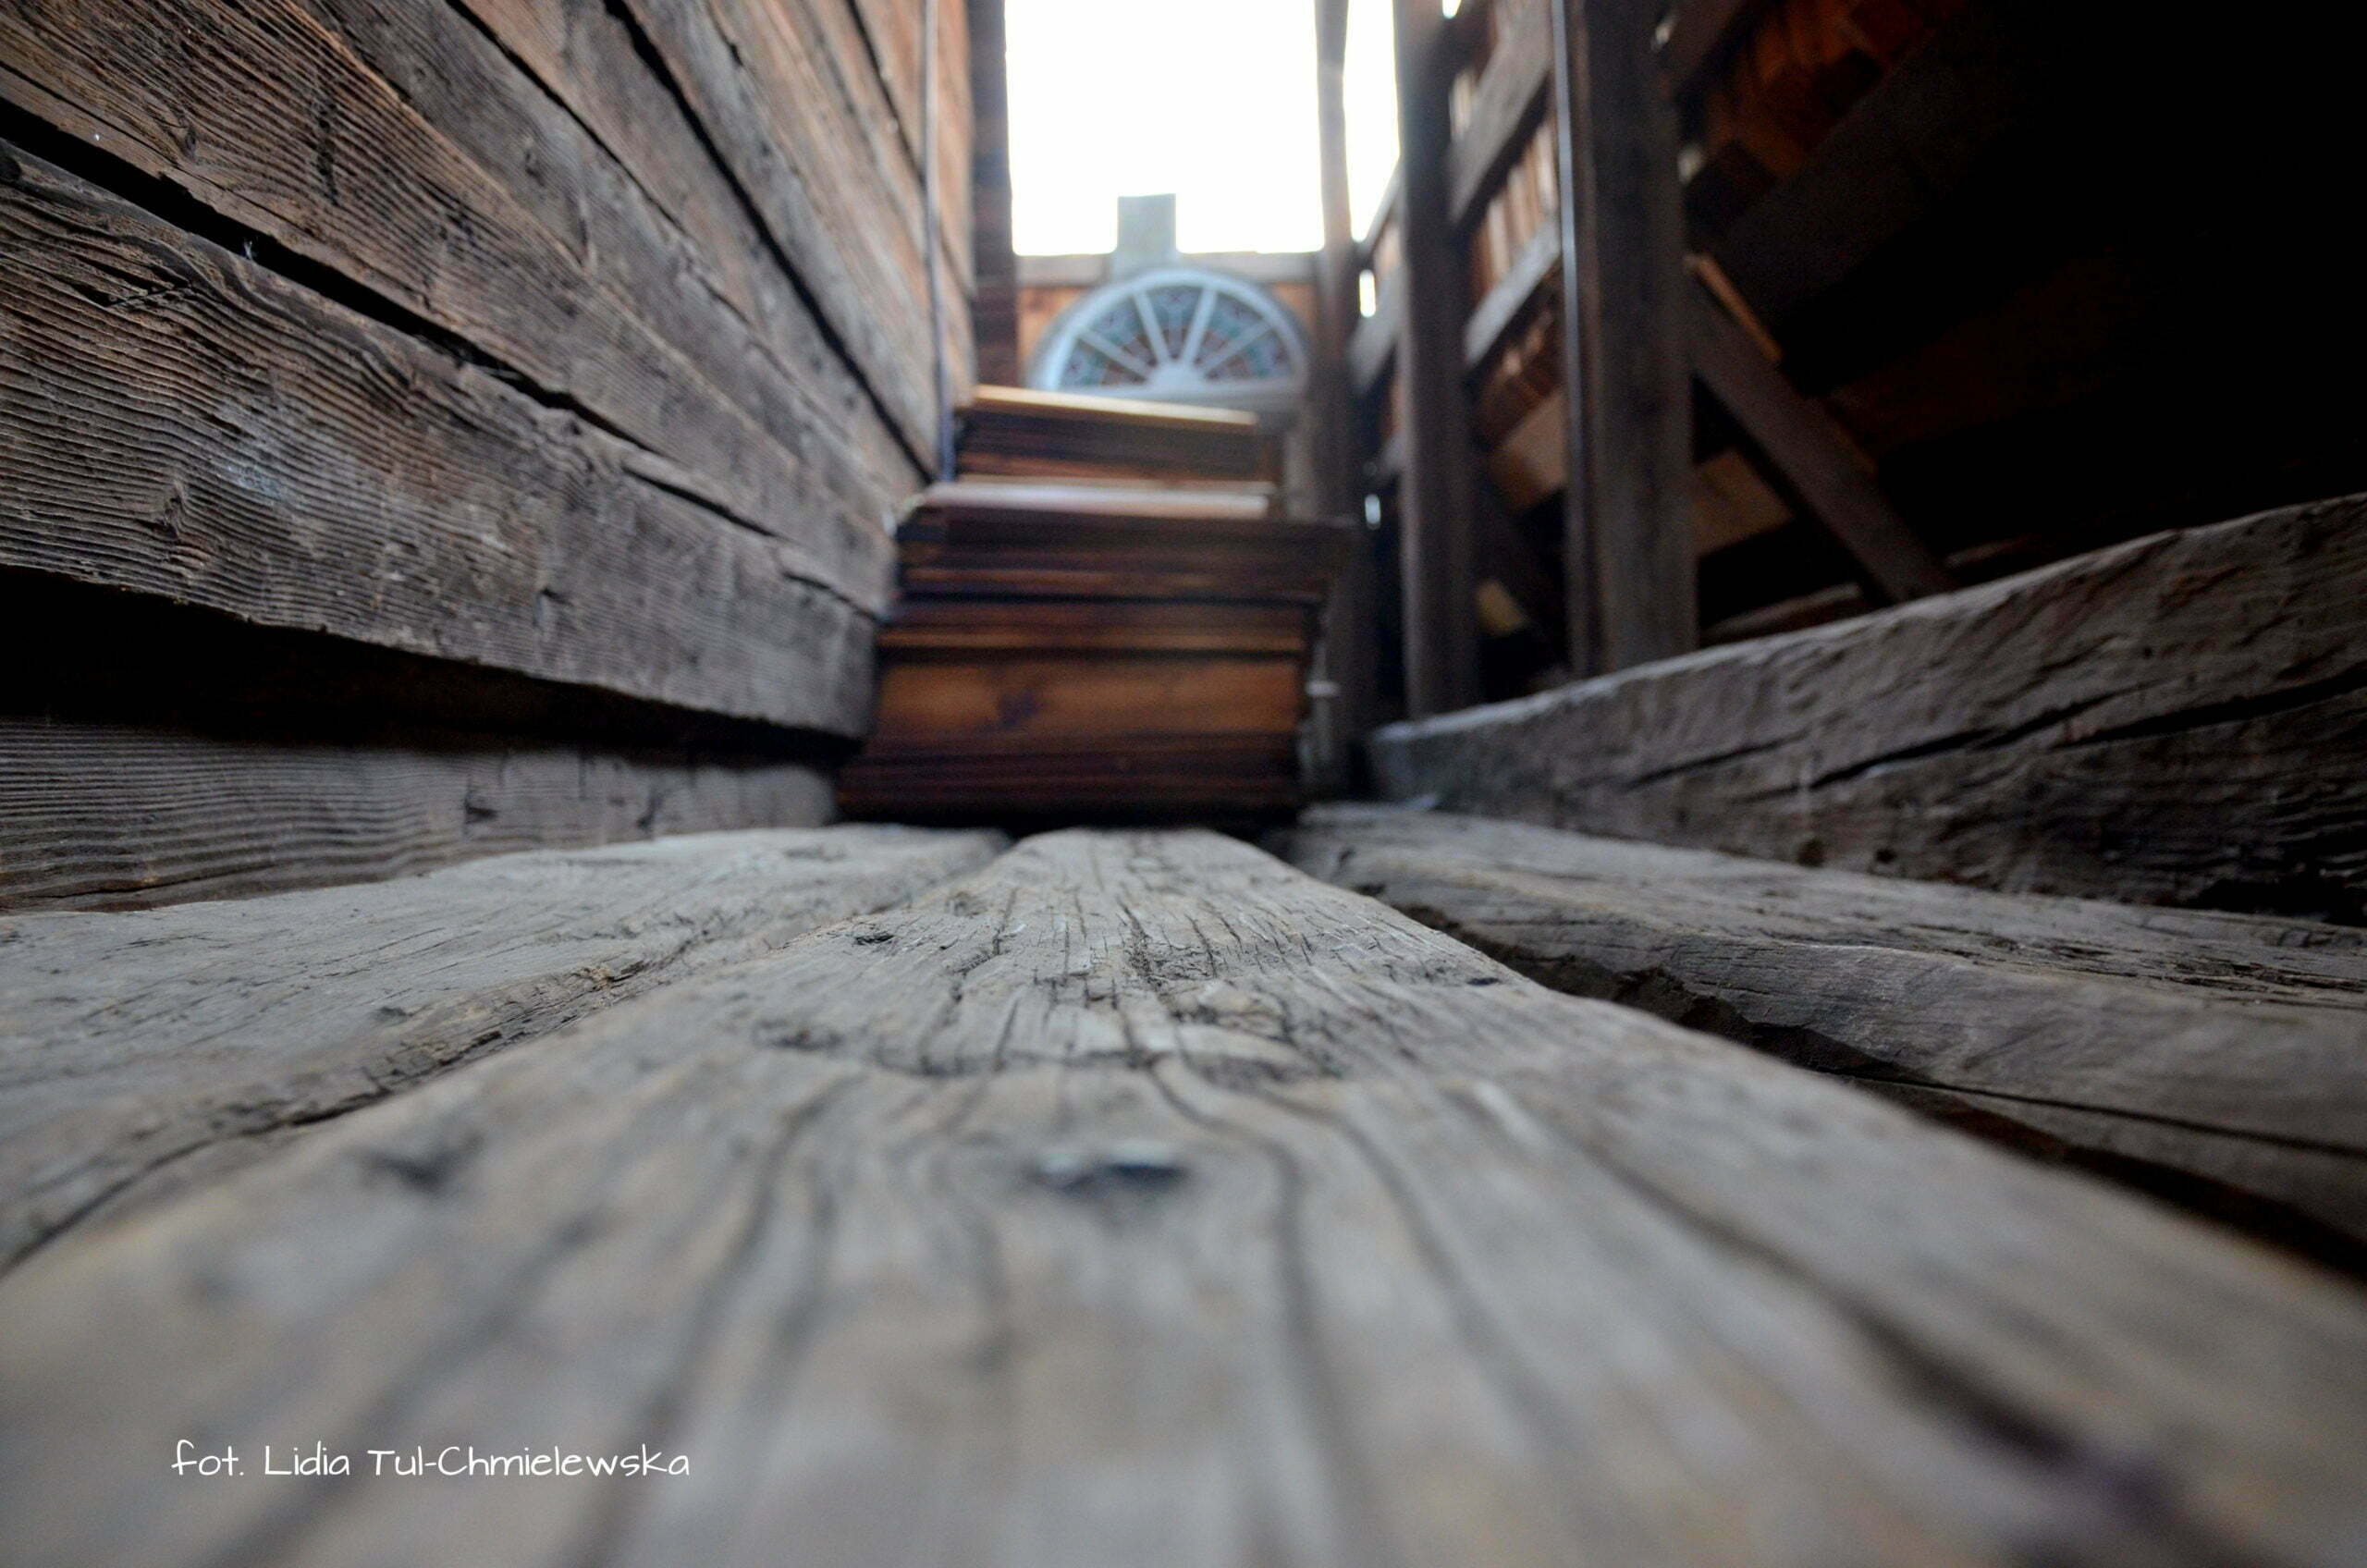 Cerkwie pachną starym drewnem fot. Lidia Tul-Chmielewska